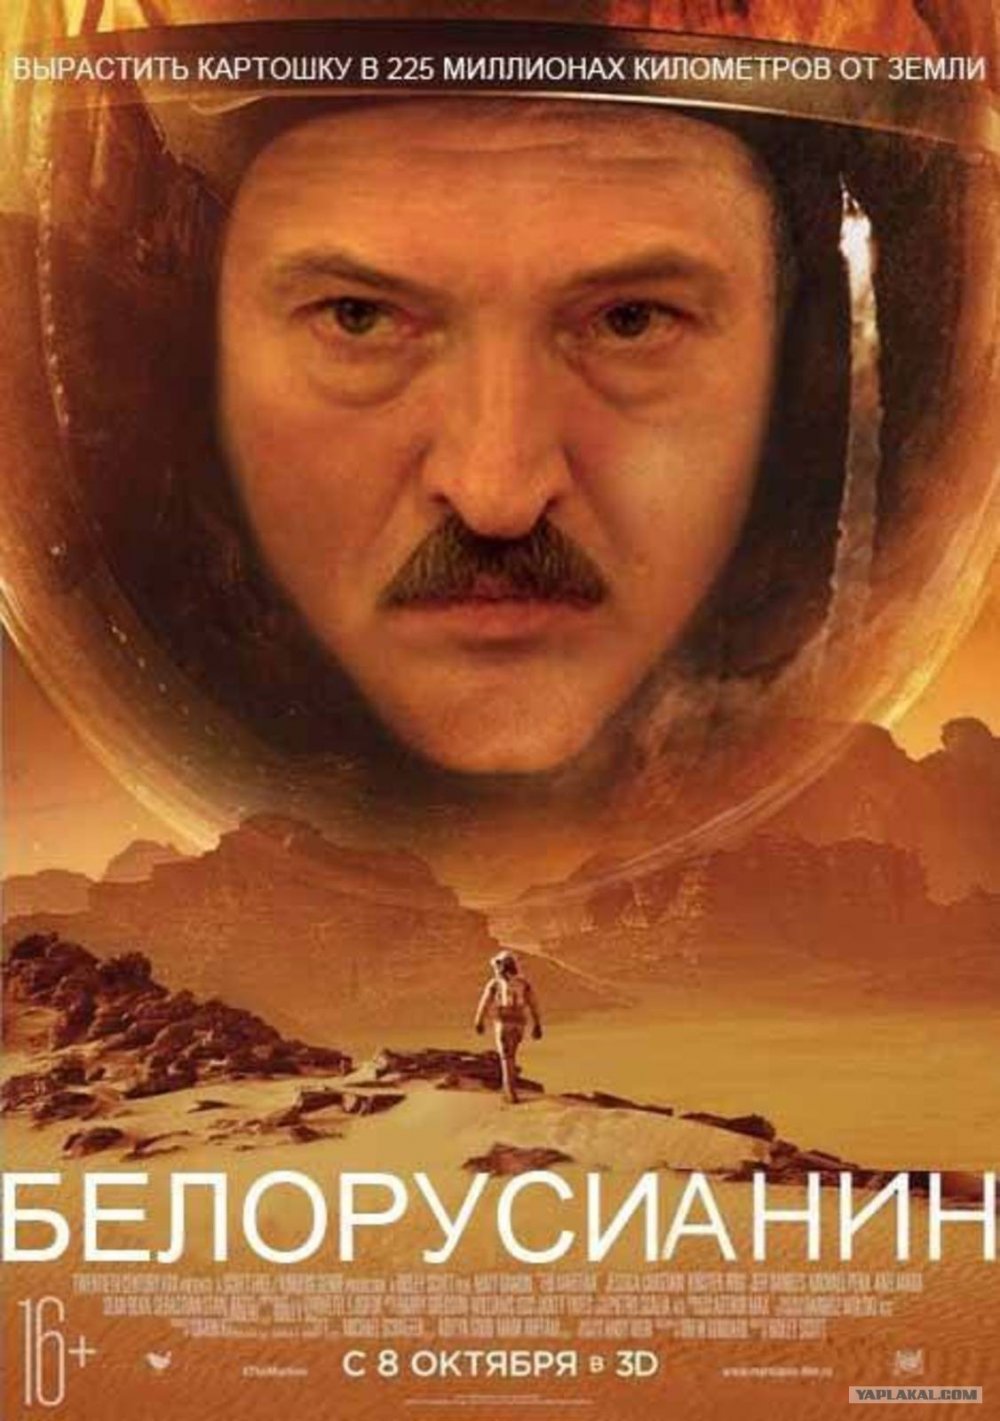 Белоруссианин Марсианин